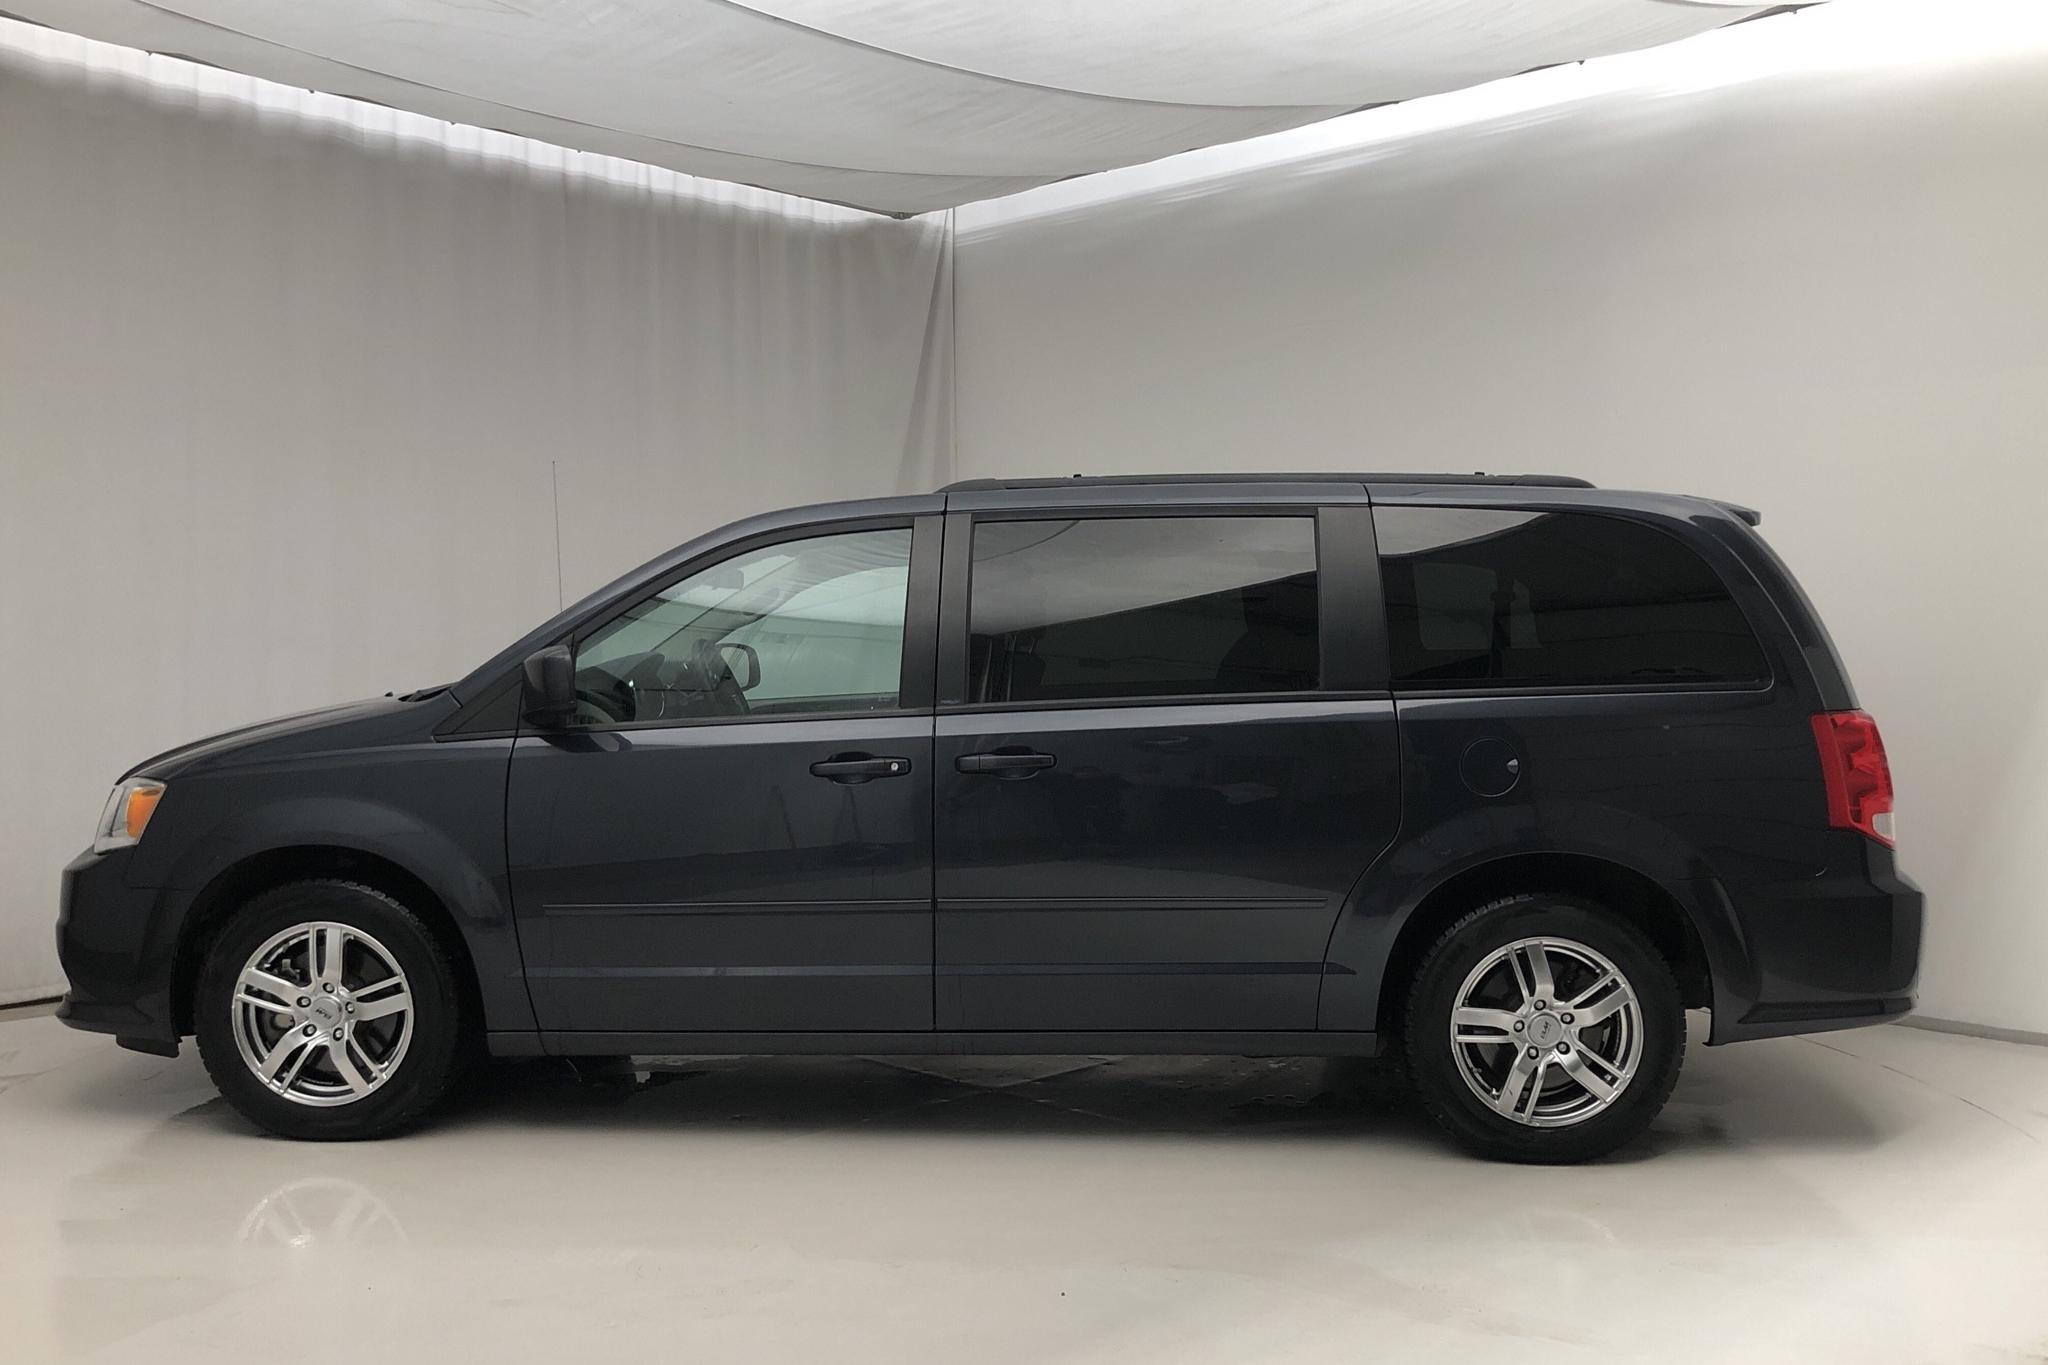 Dodge Grand Caravan SXT Flex Fuel (287hk) - 89 830 km - Automatic - black - 2014